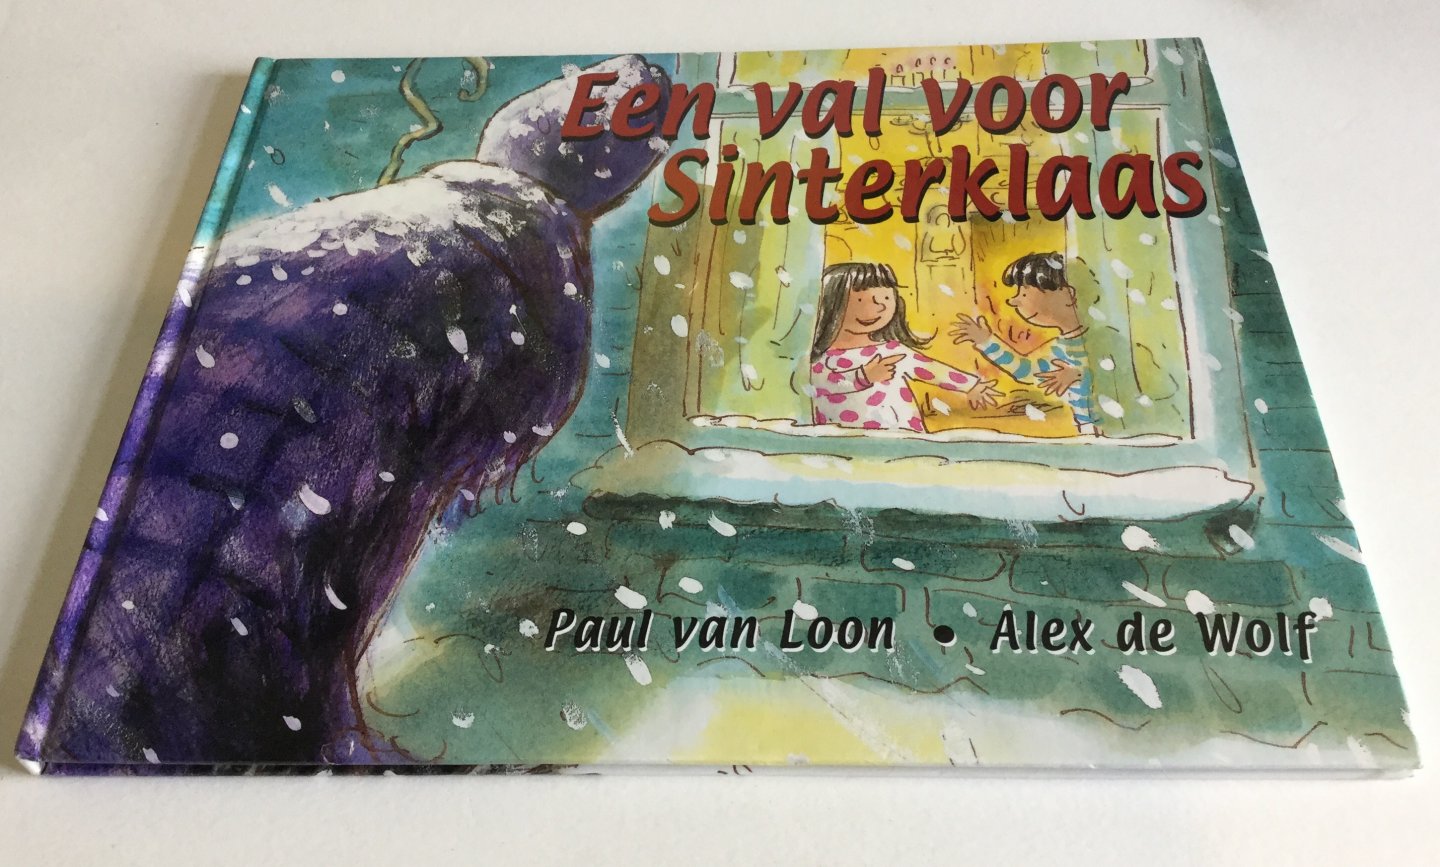 Mol, Johnny de & Pieter Gaudesaboos - Piet is verliefd (gratis hierbij: Een val voor Sinterklaas)